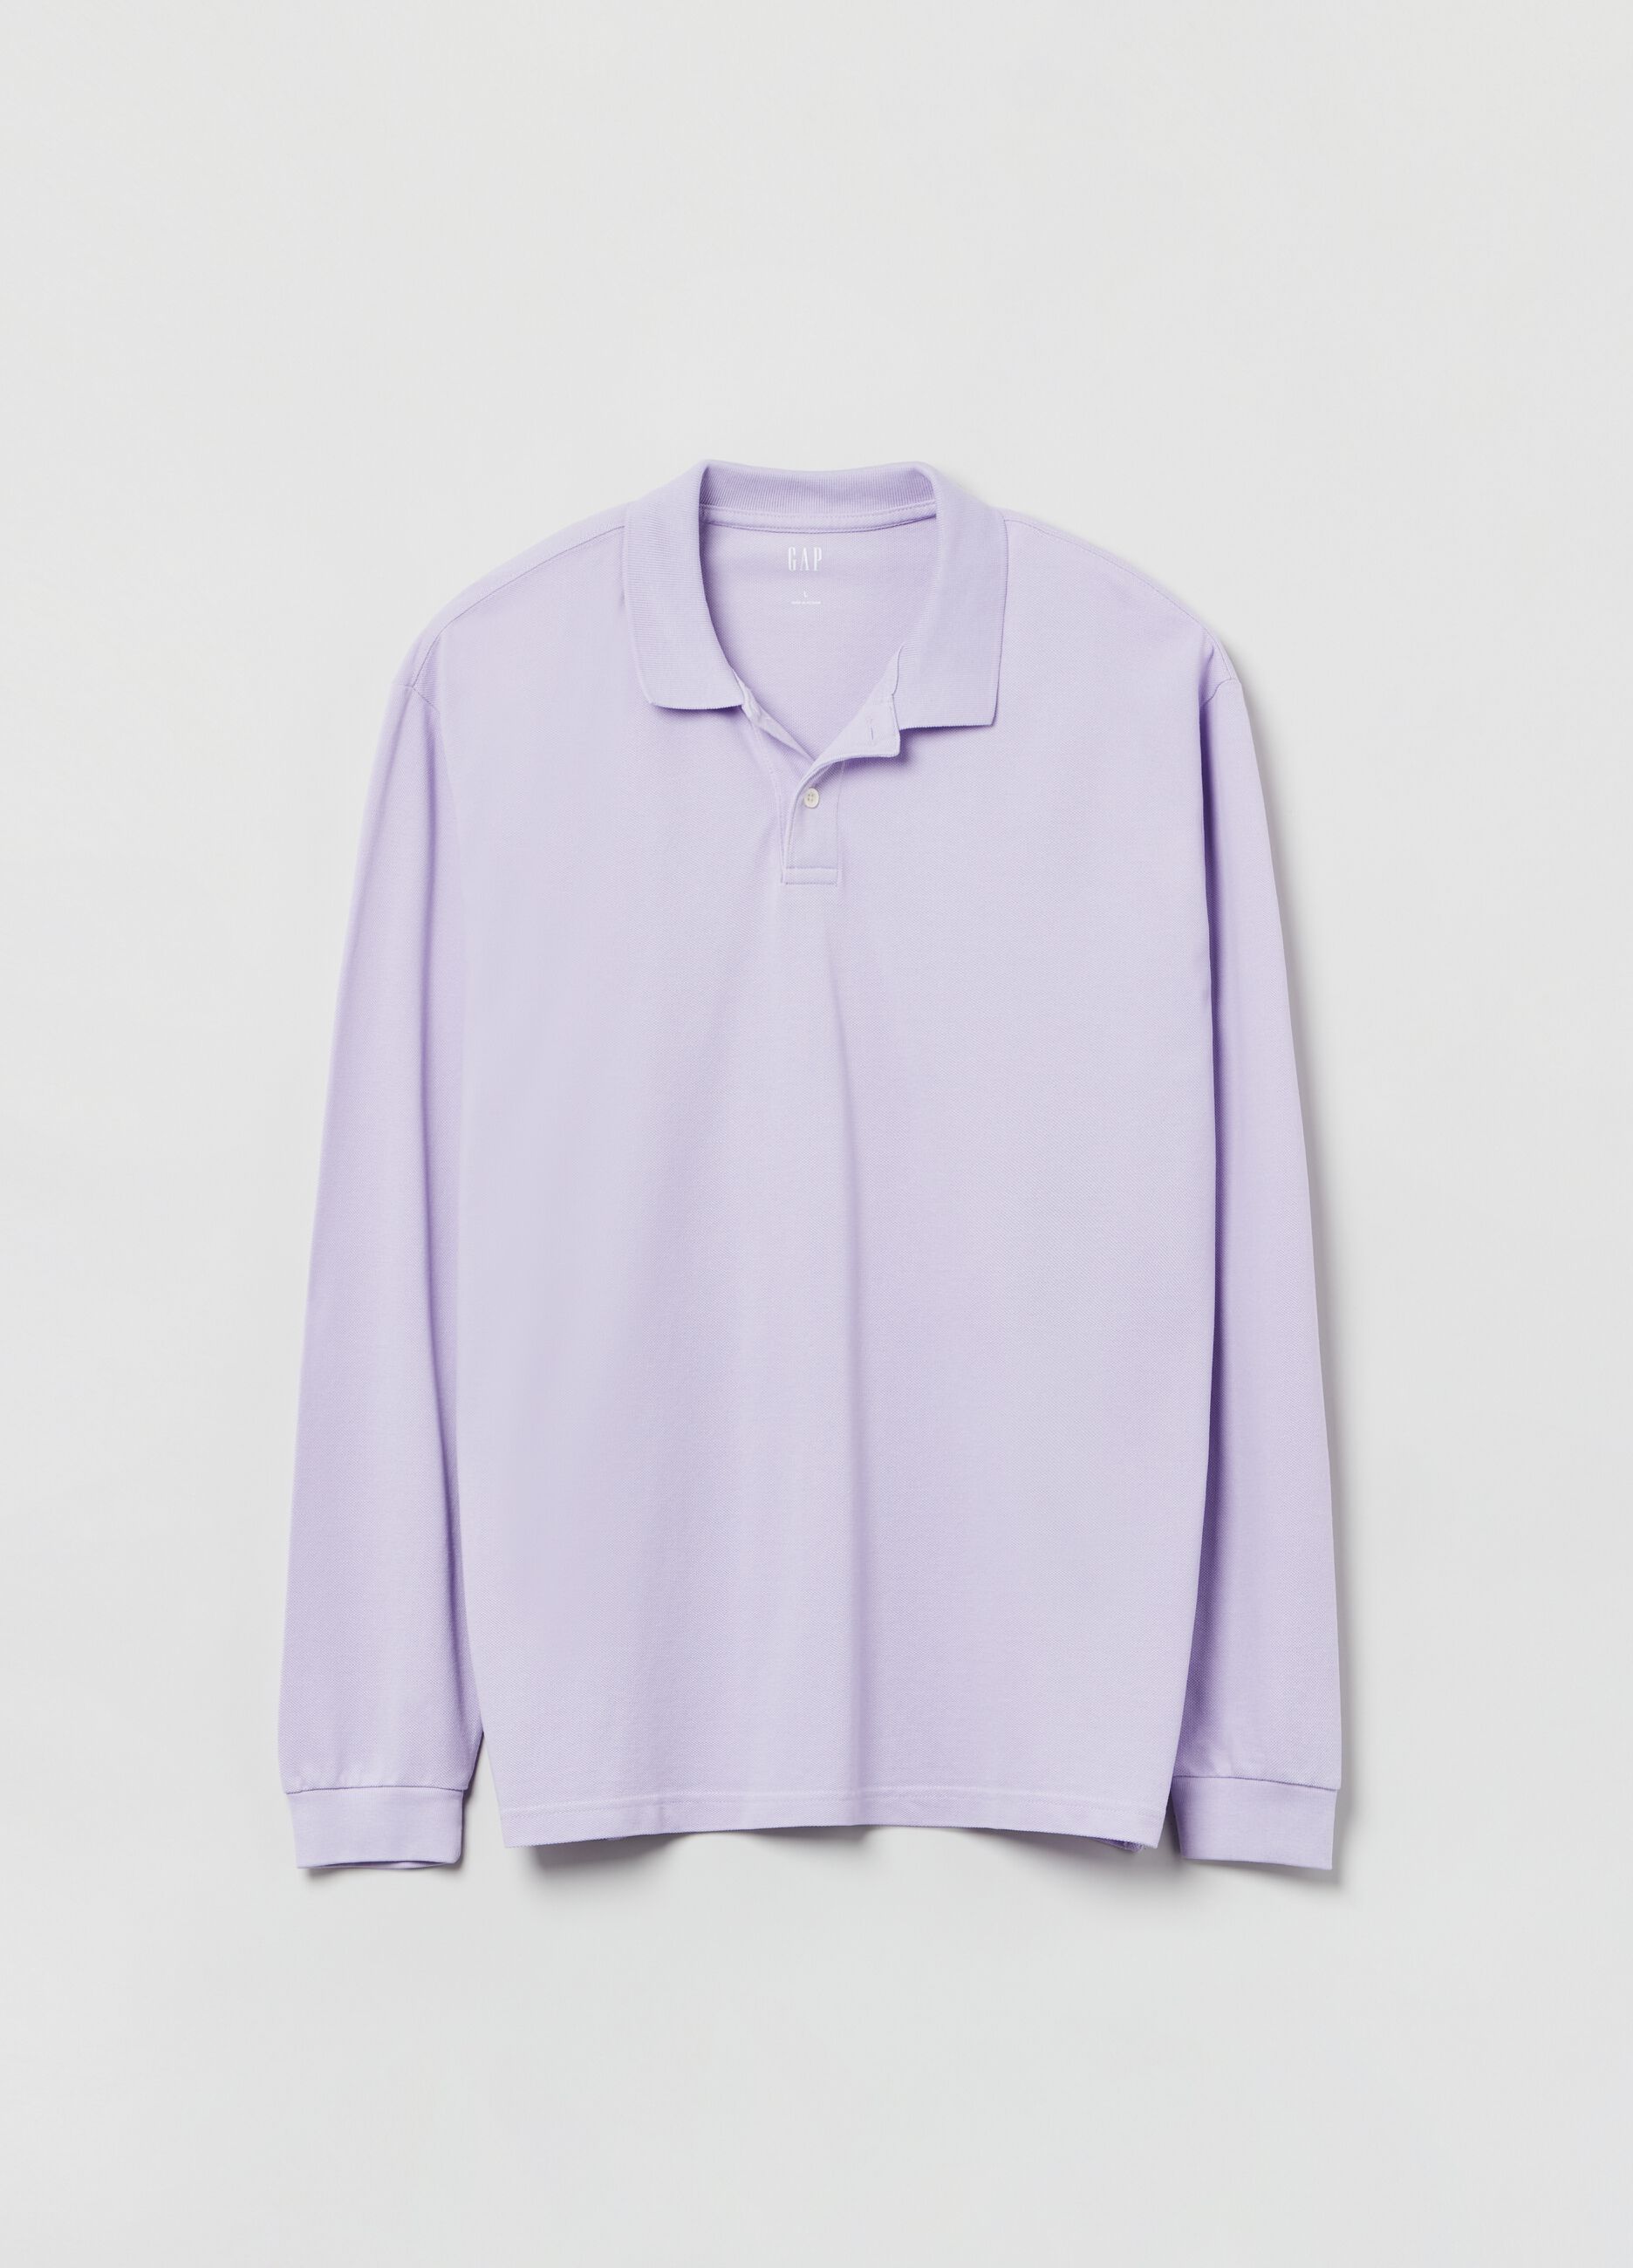 Long-sleeved pique polo shirt